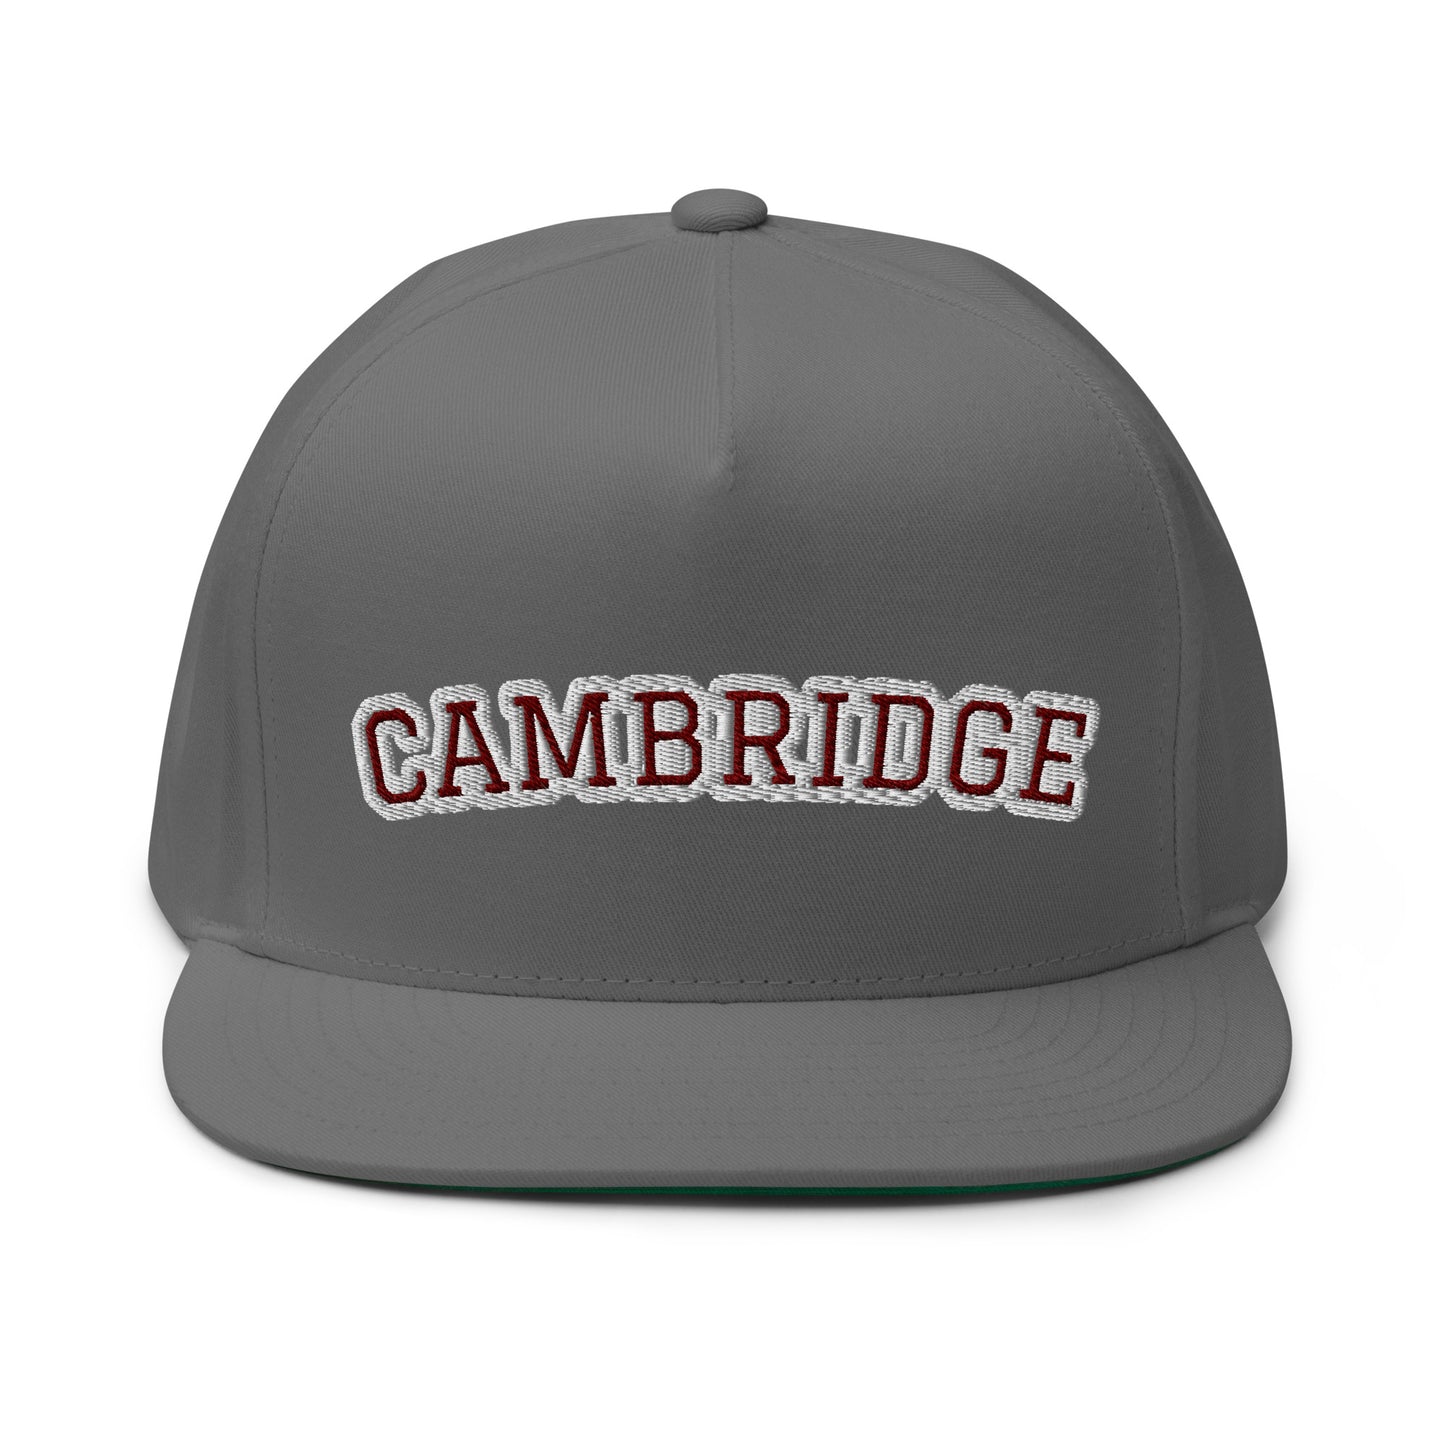 Cambridge Flat Bill Cap